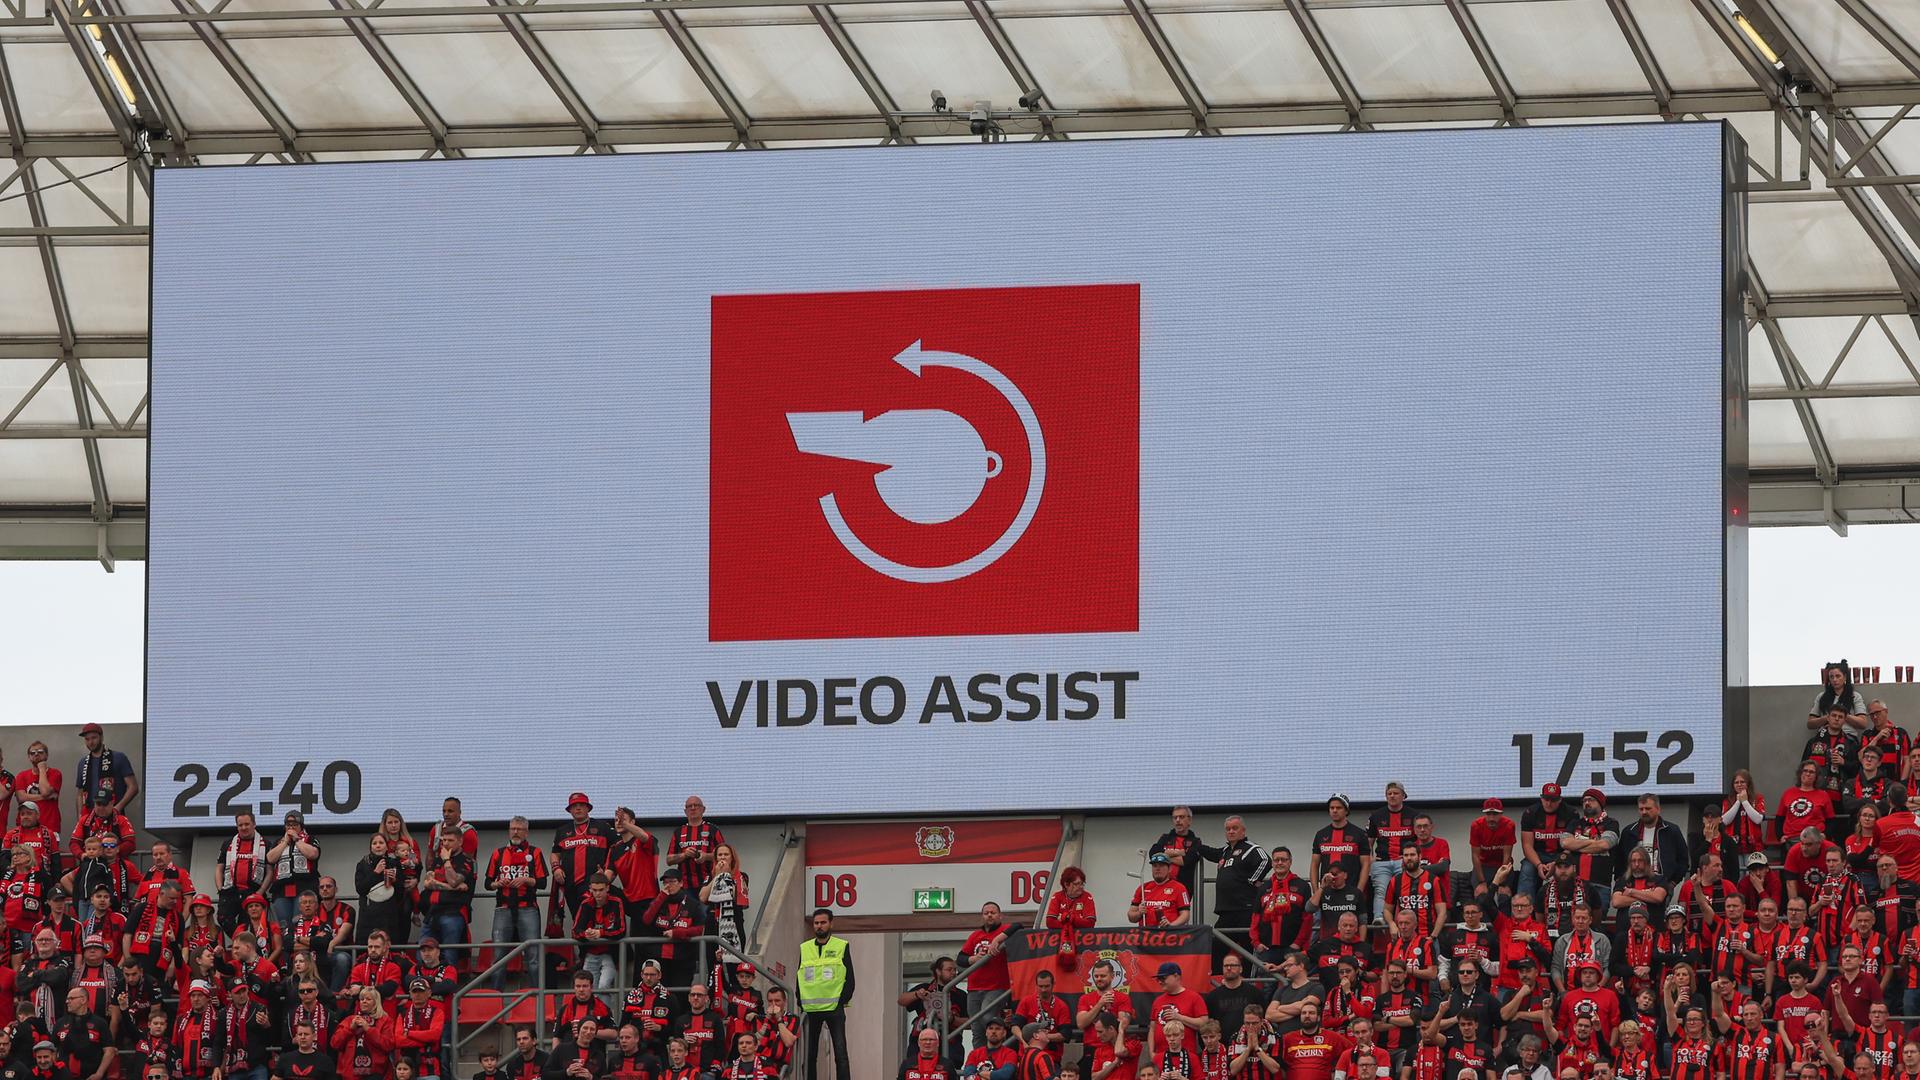 Videoleinwand mit dem Video Assist Logo beim Fußball-Bundesligaspiel Bayer 04 Leverkusen gegen Werder Bremen